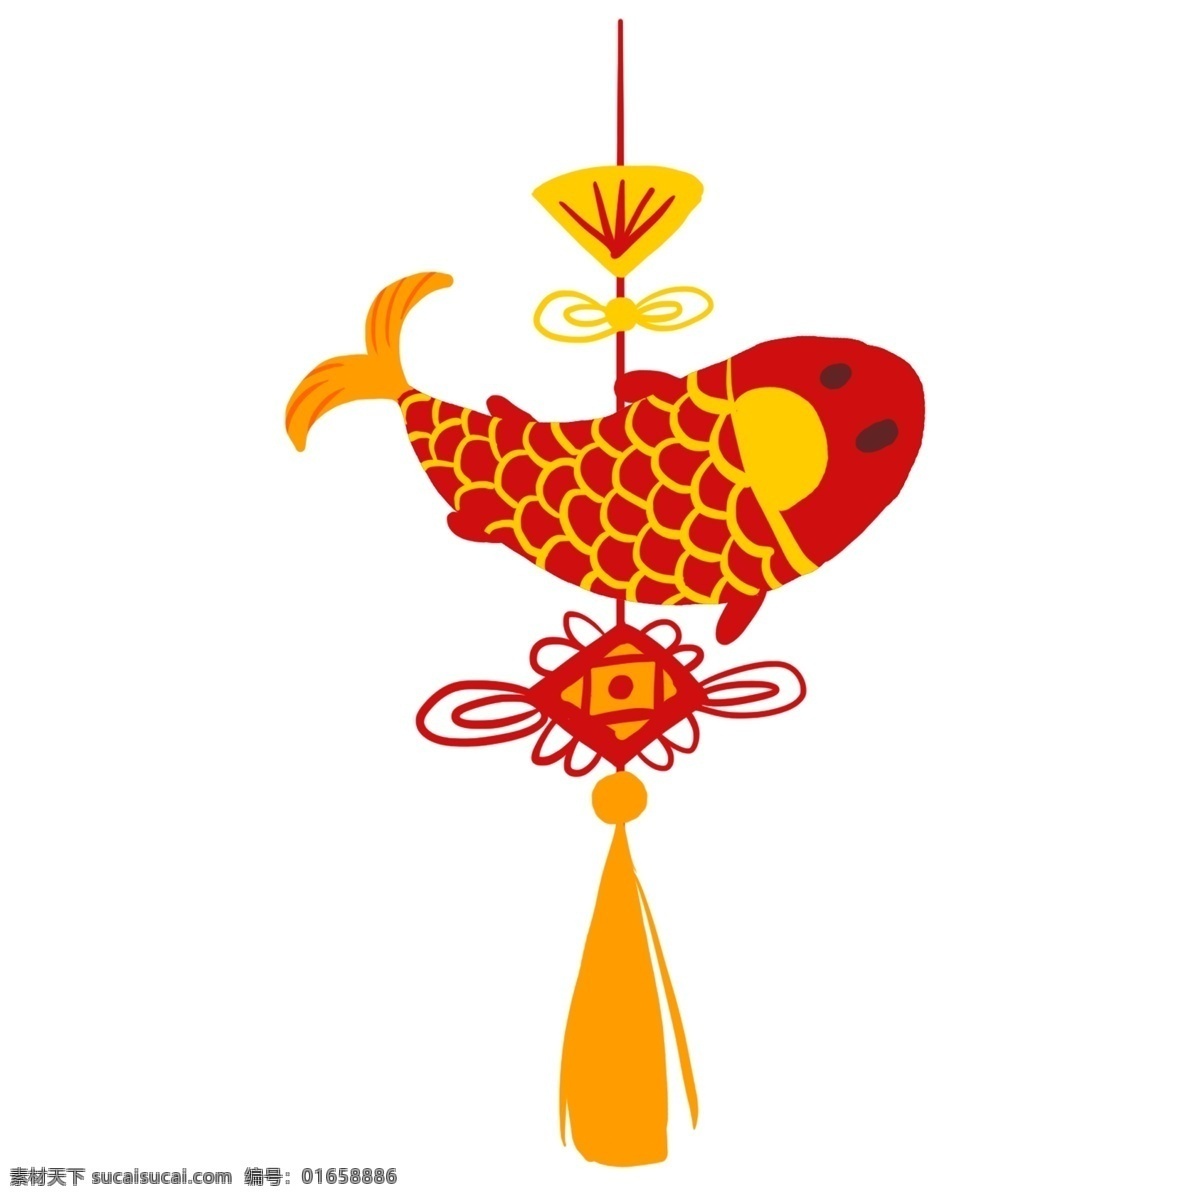 卡通 新年 喜庆 鱼 挂件 红色 卡通鱼 手绘 中国结 中国风 节日 新年插画 新年挂件 挂件装饰 鱼挂件